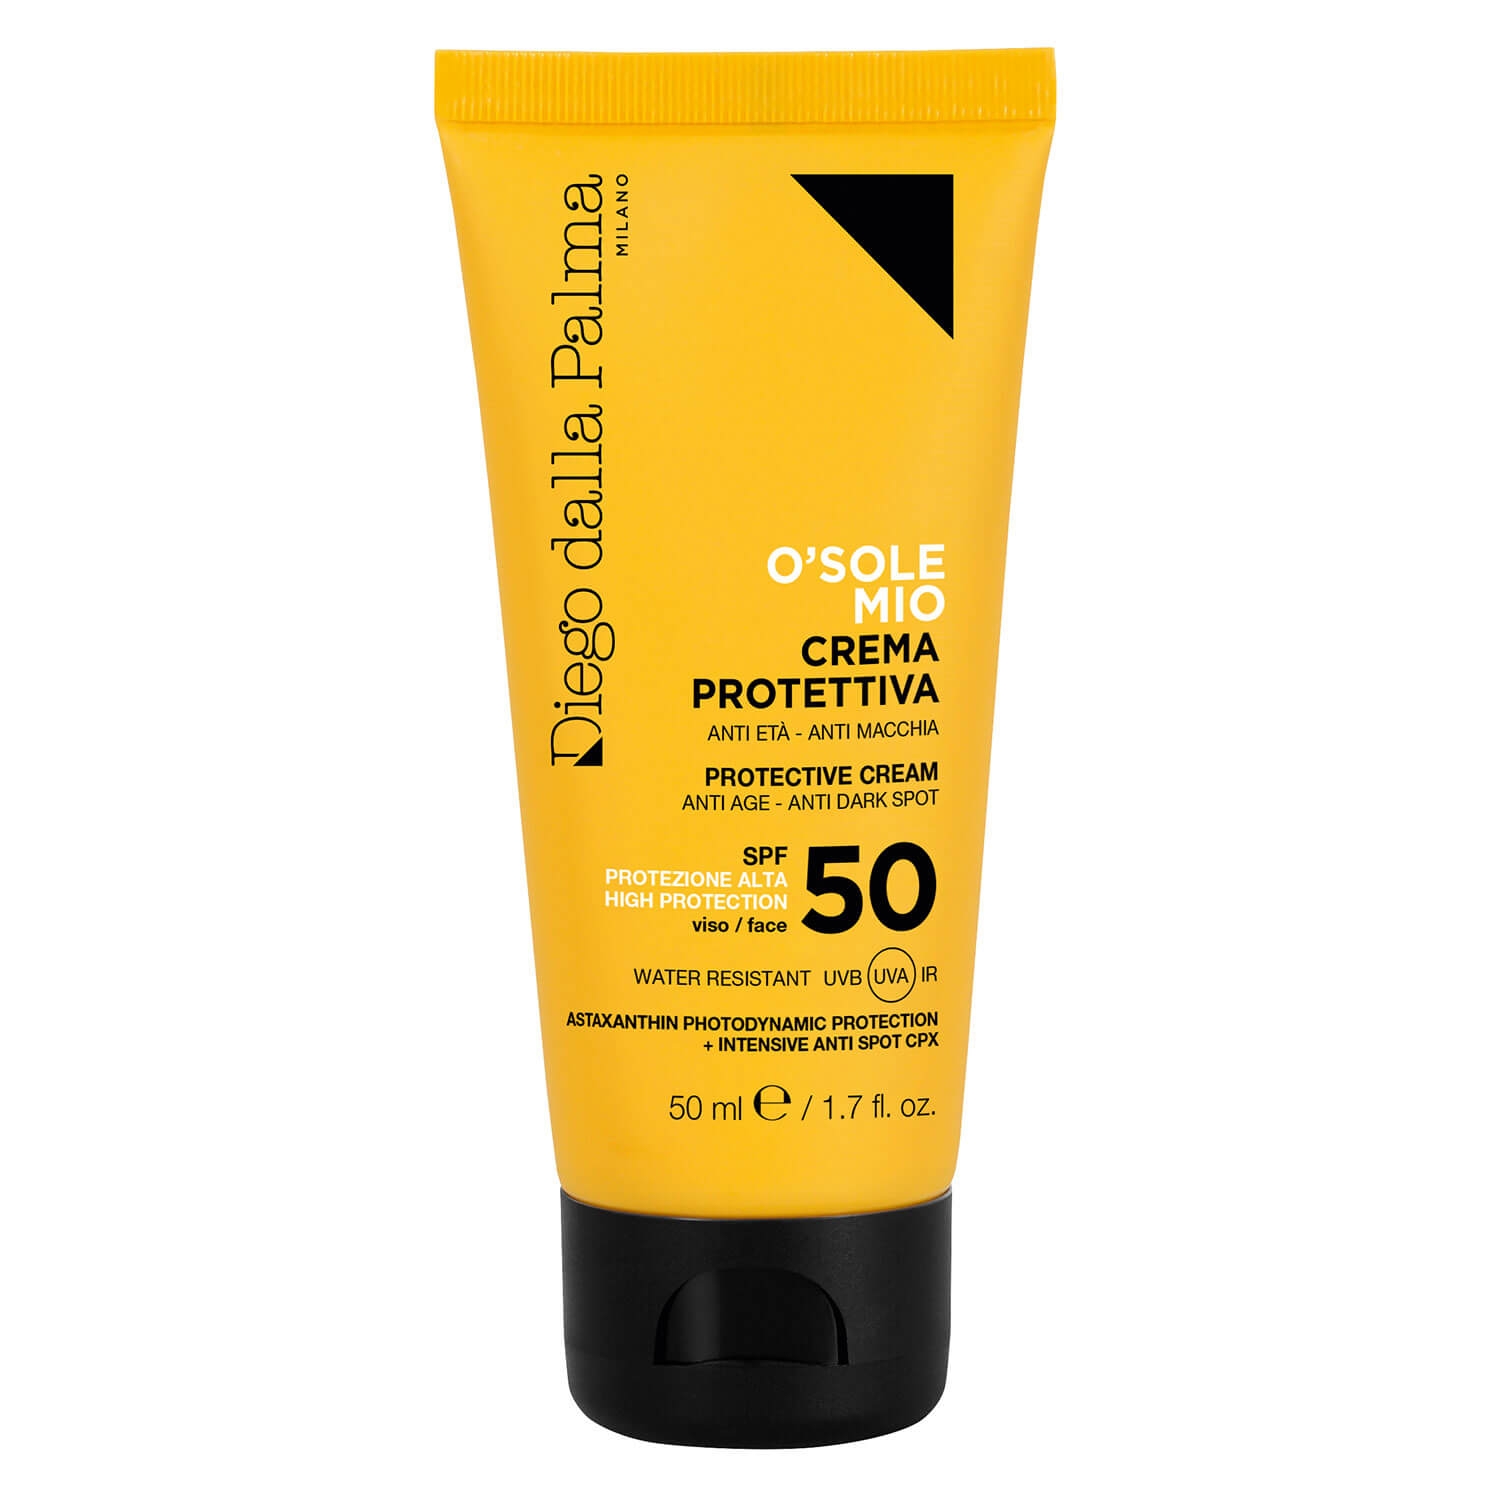 Produktbild von Diego dalla Palma Sun - O'SOLE MIO Protective Face Cream SPF50